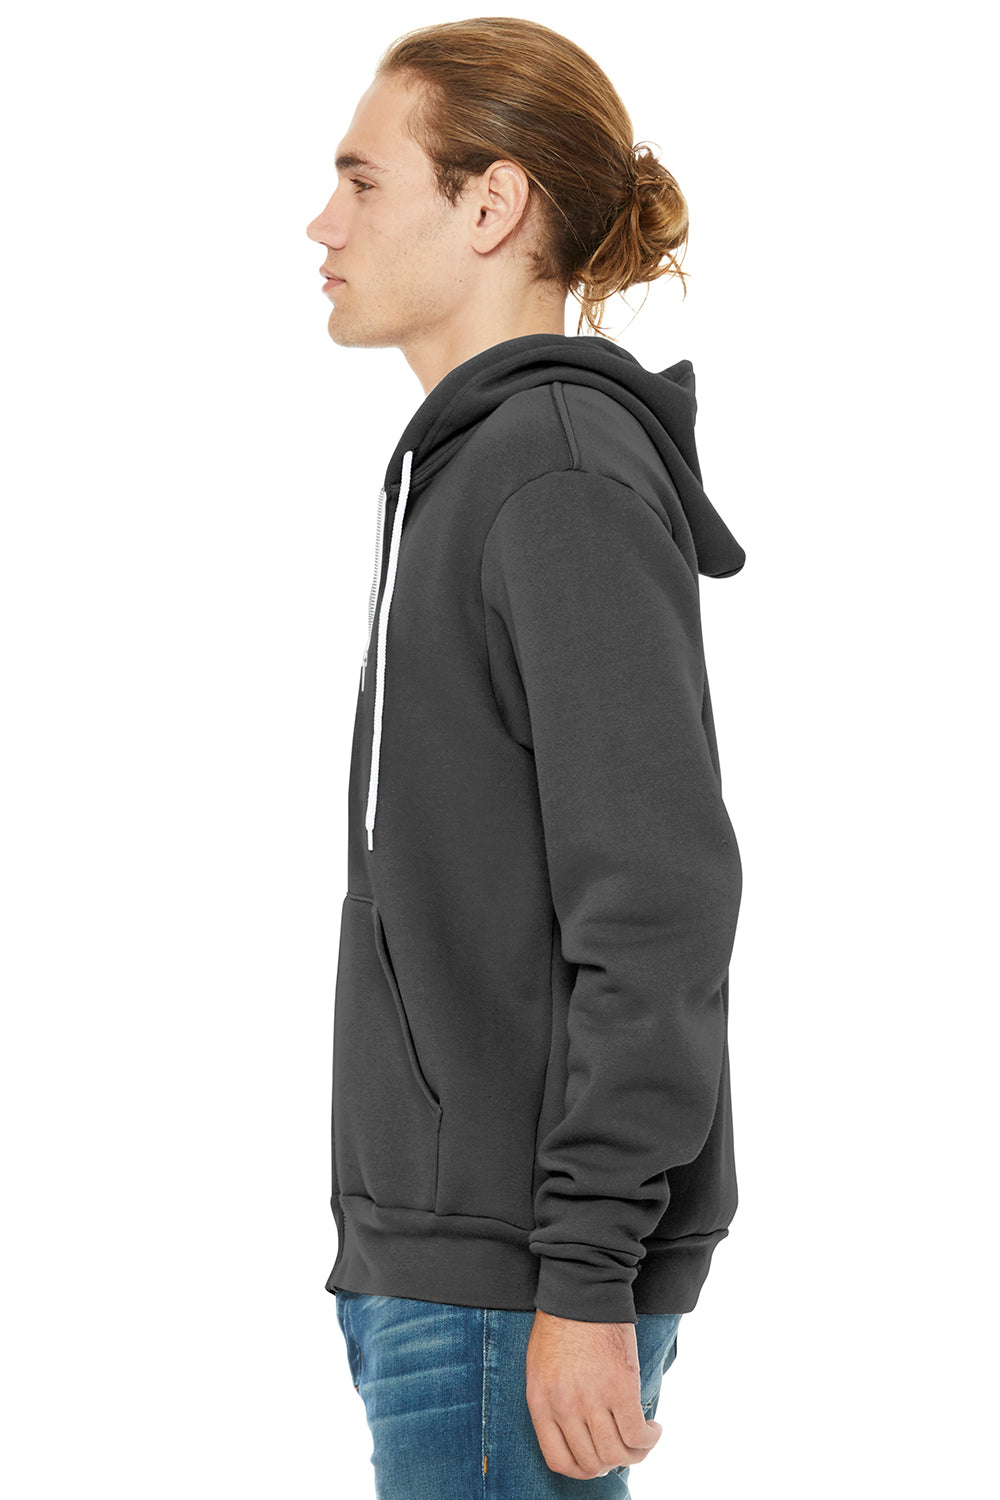 Bella + Canvas BC3739/3739 Mens Fleece Full Zip Hooded Sweatshirt Hoodie Asphalt Grey Model Side